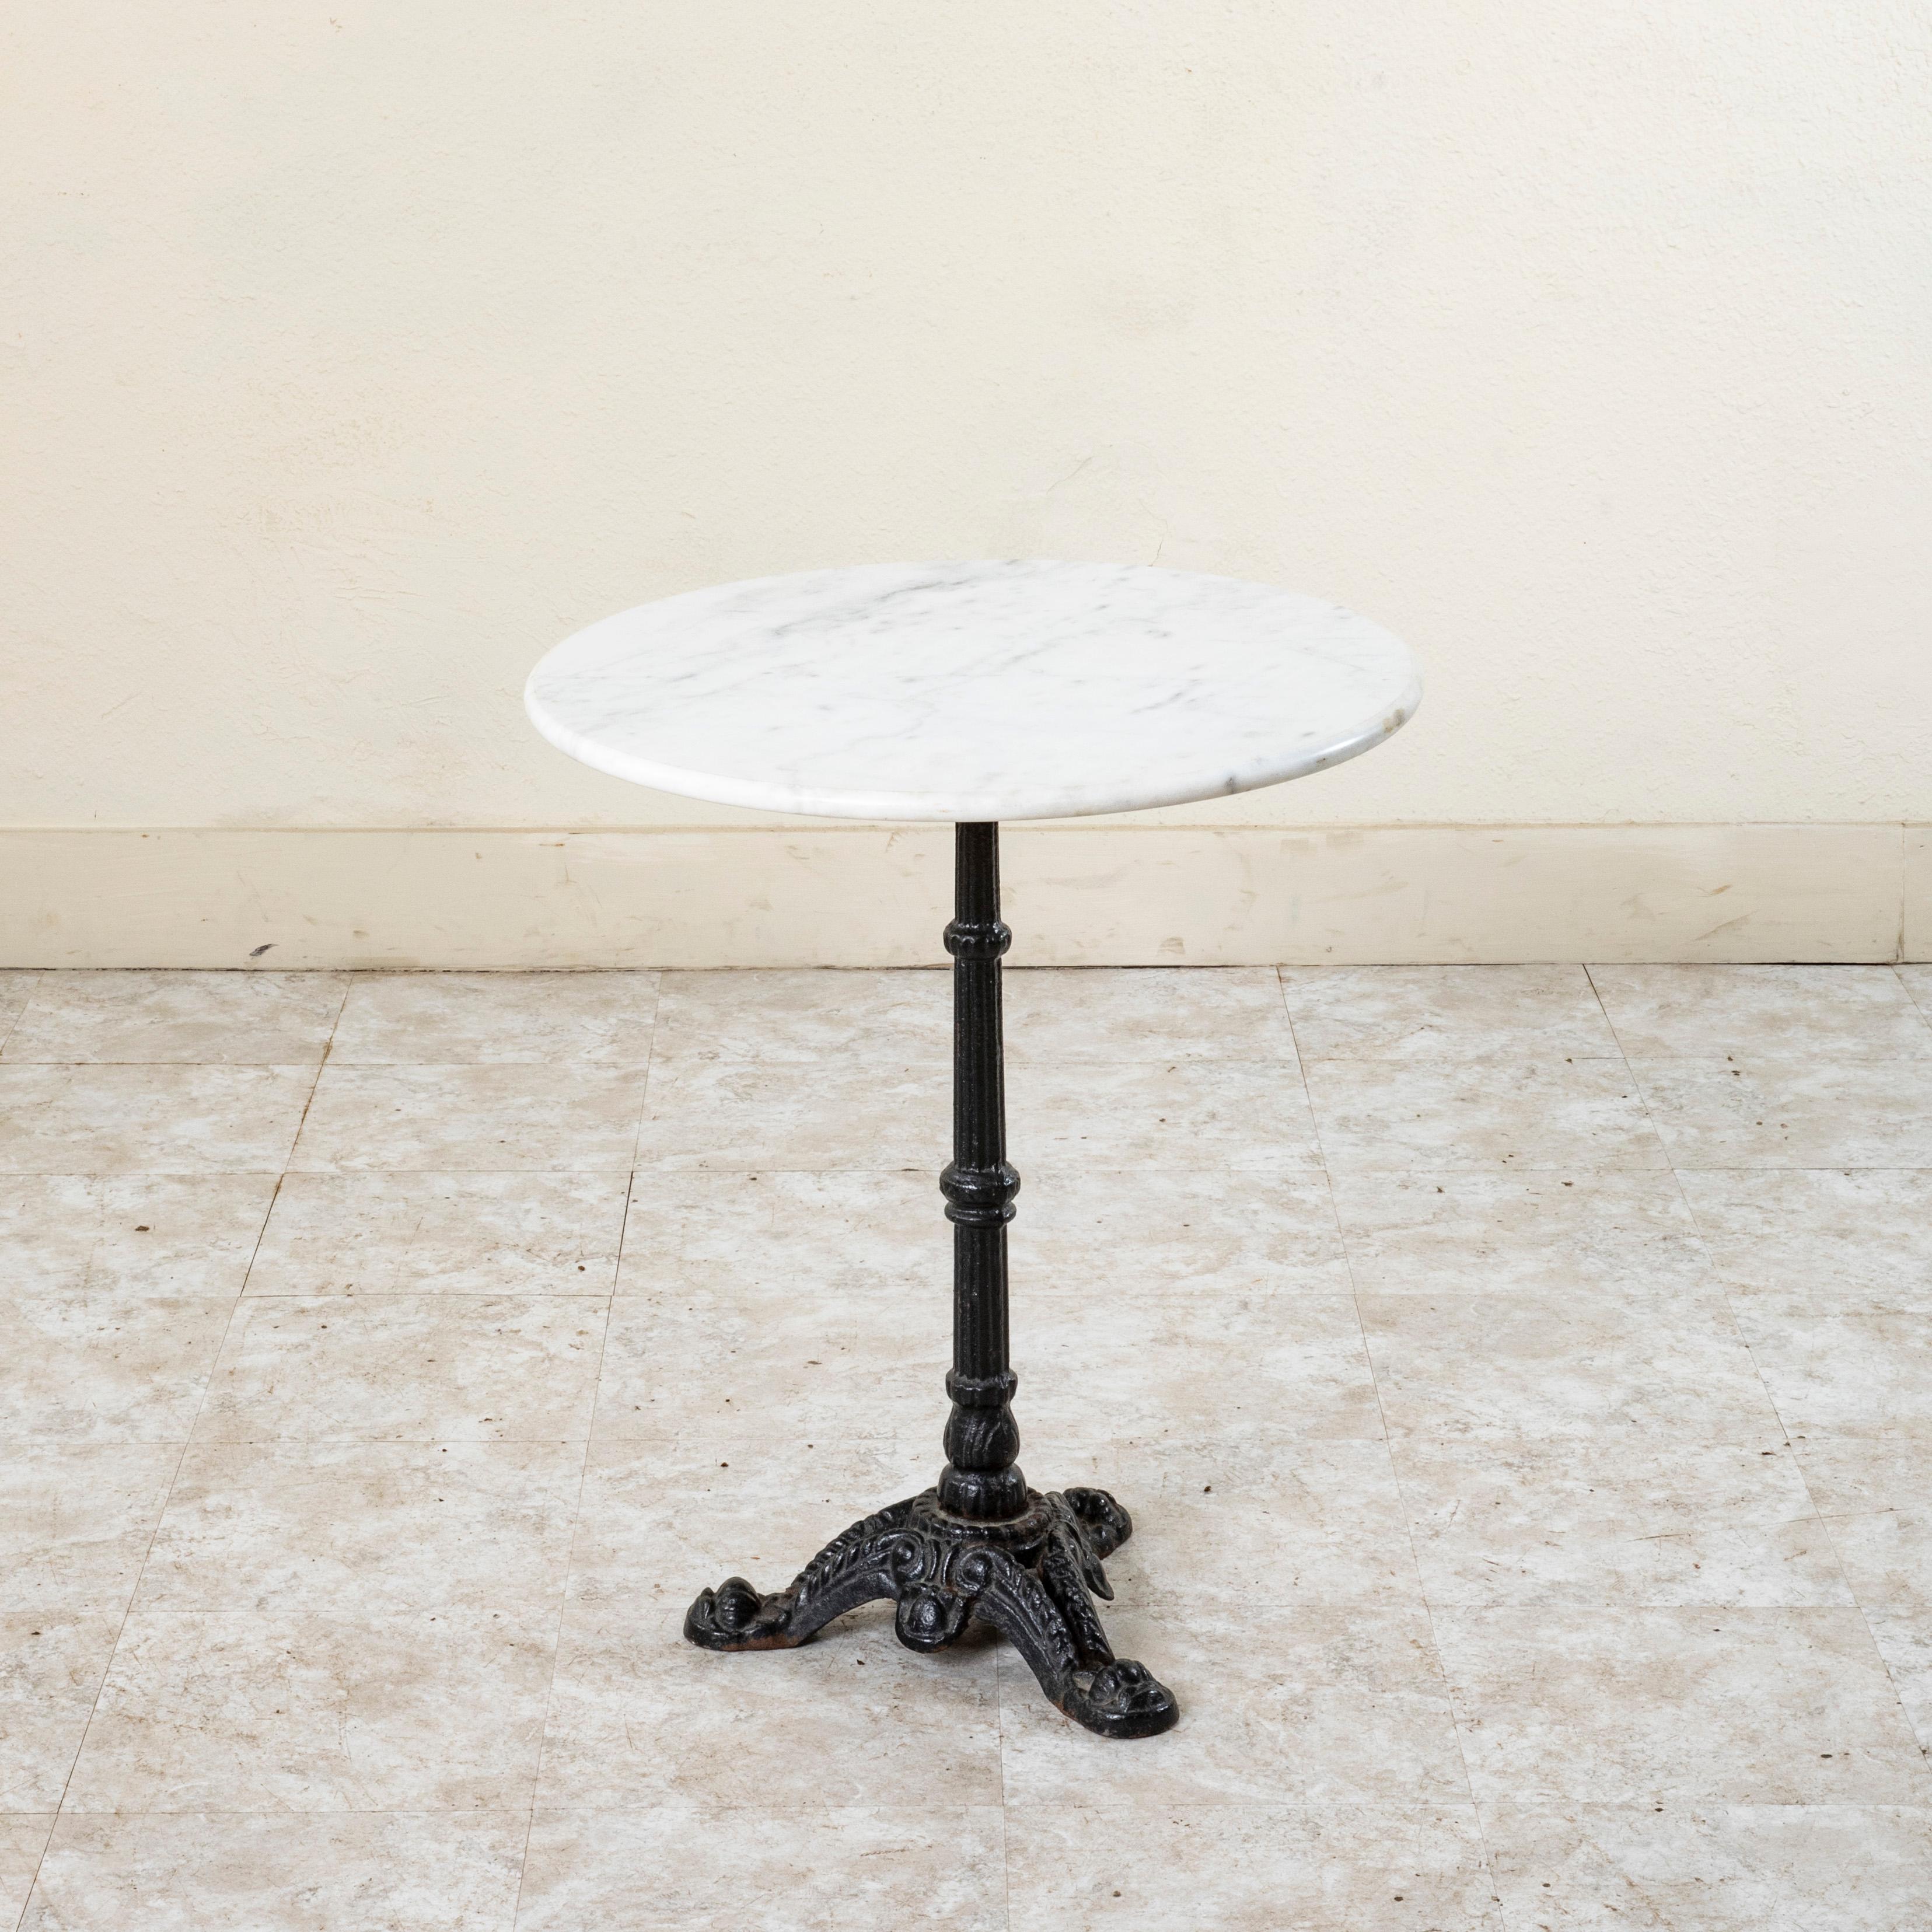 Dieser klassische französische Bistro- oder Cafétisch aus Eisen aus der Mitte des zwanzigsten Jahrhunderts hat eine runde Platte aus geschliffenem weißem Marmor mit einem Durchmesser von 23 Zoll und einer abgerundeten Kante. Die Platte ruht auf